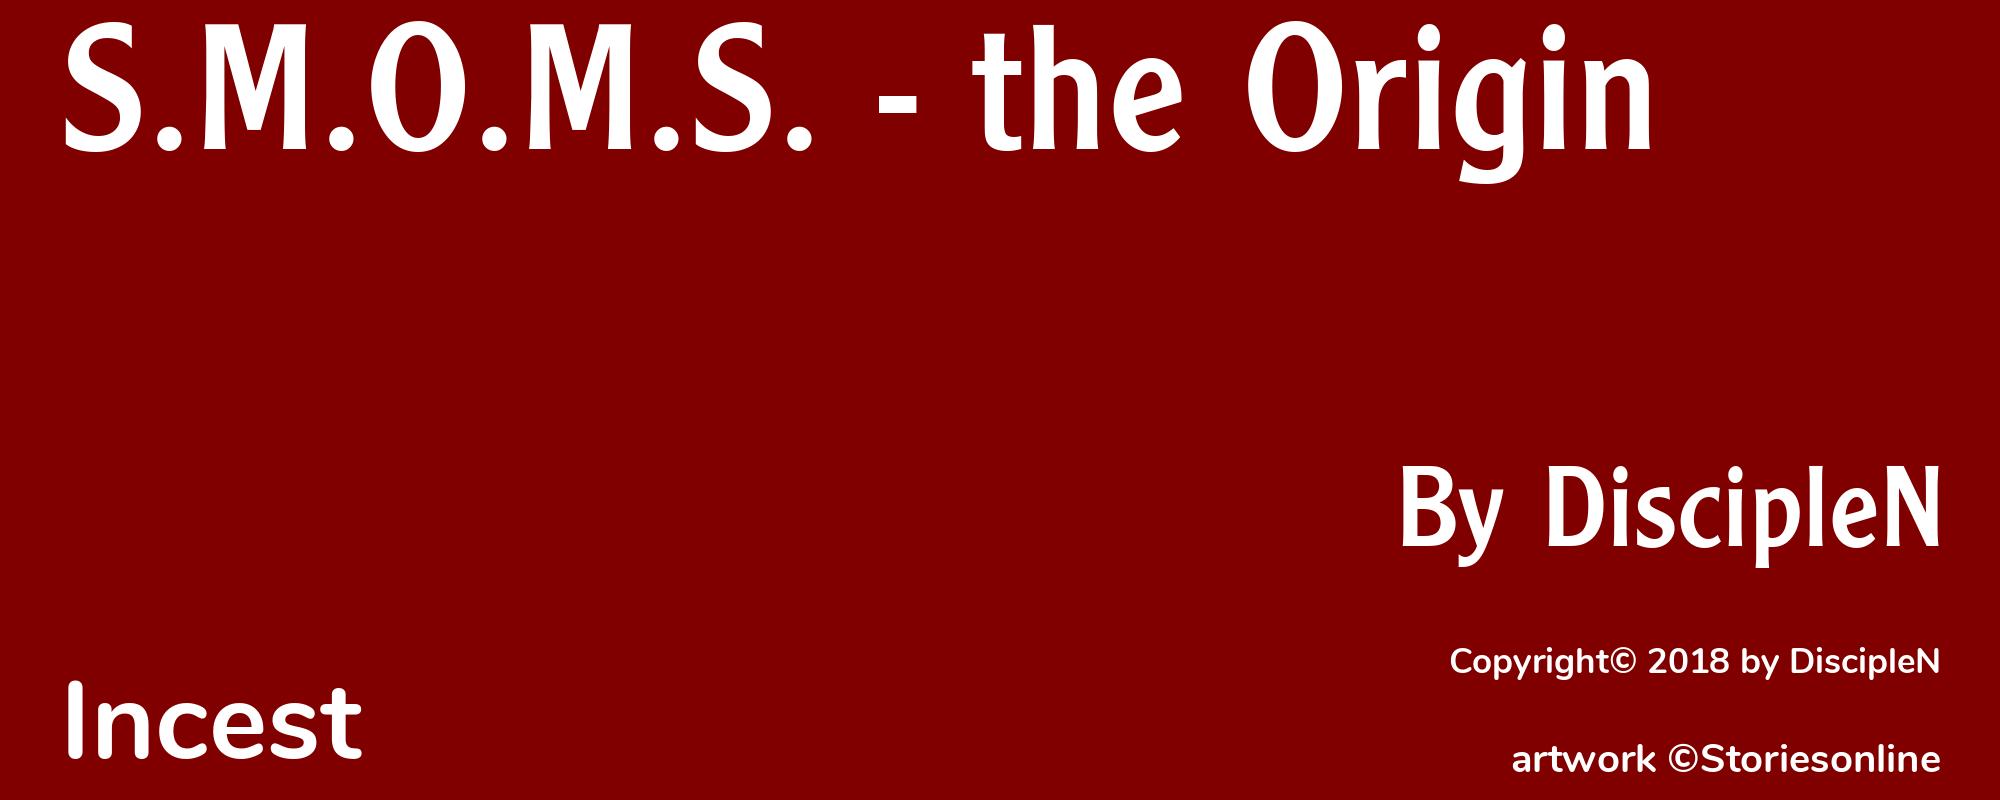 S.M.O.M.S. - the Origin - Cover